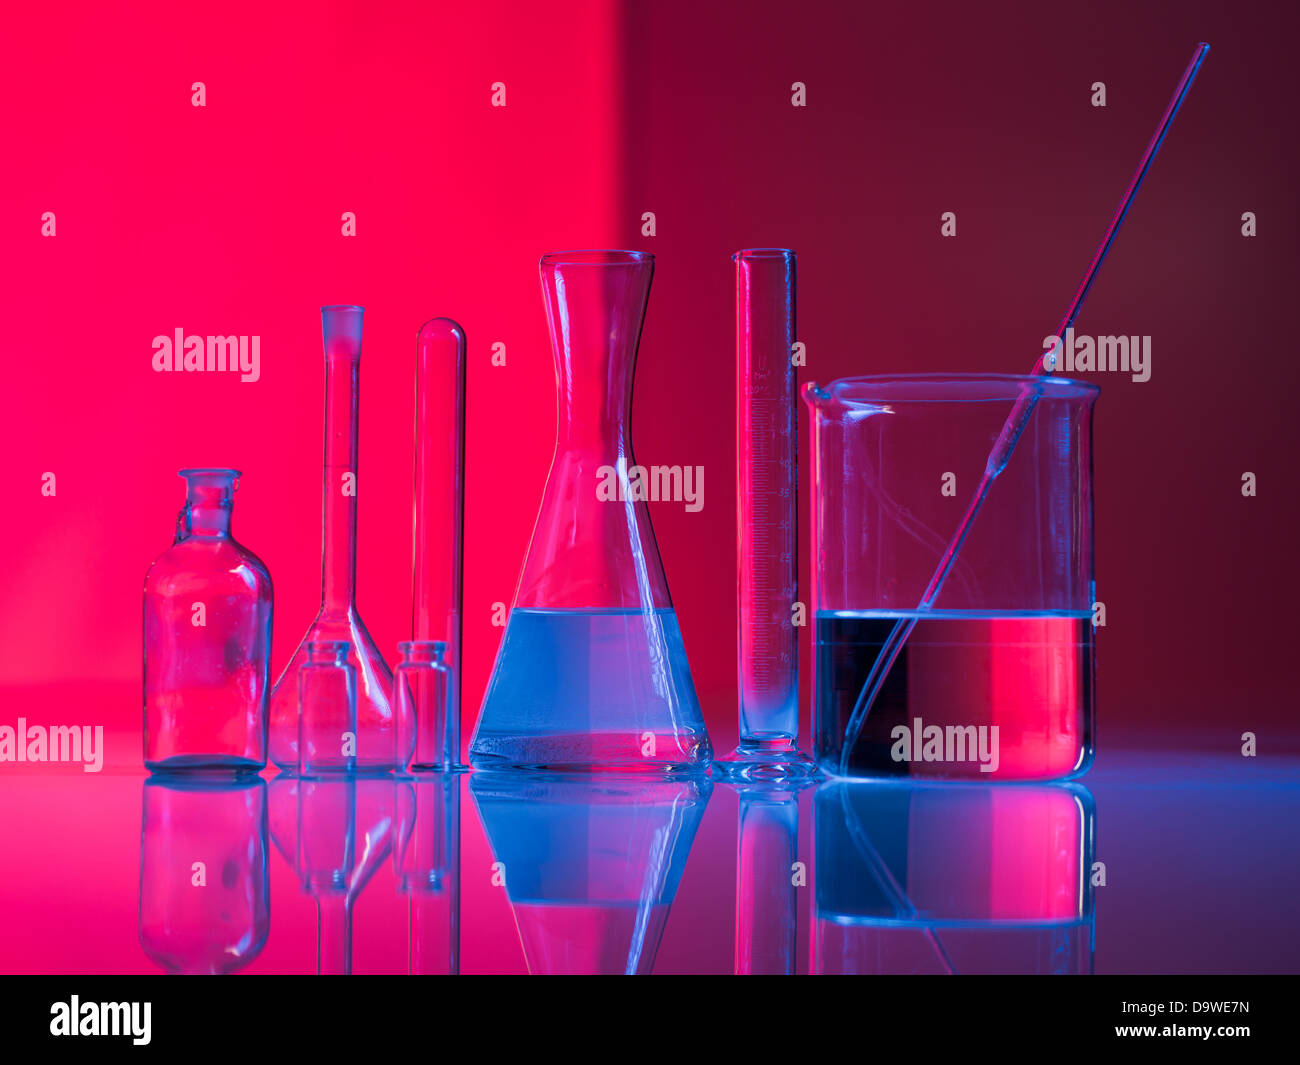 Fond rouge avec des contenants en verre et leur réflexion sur une table dans une lumière bleue Banque D'Images